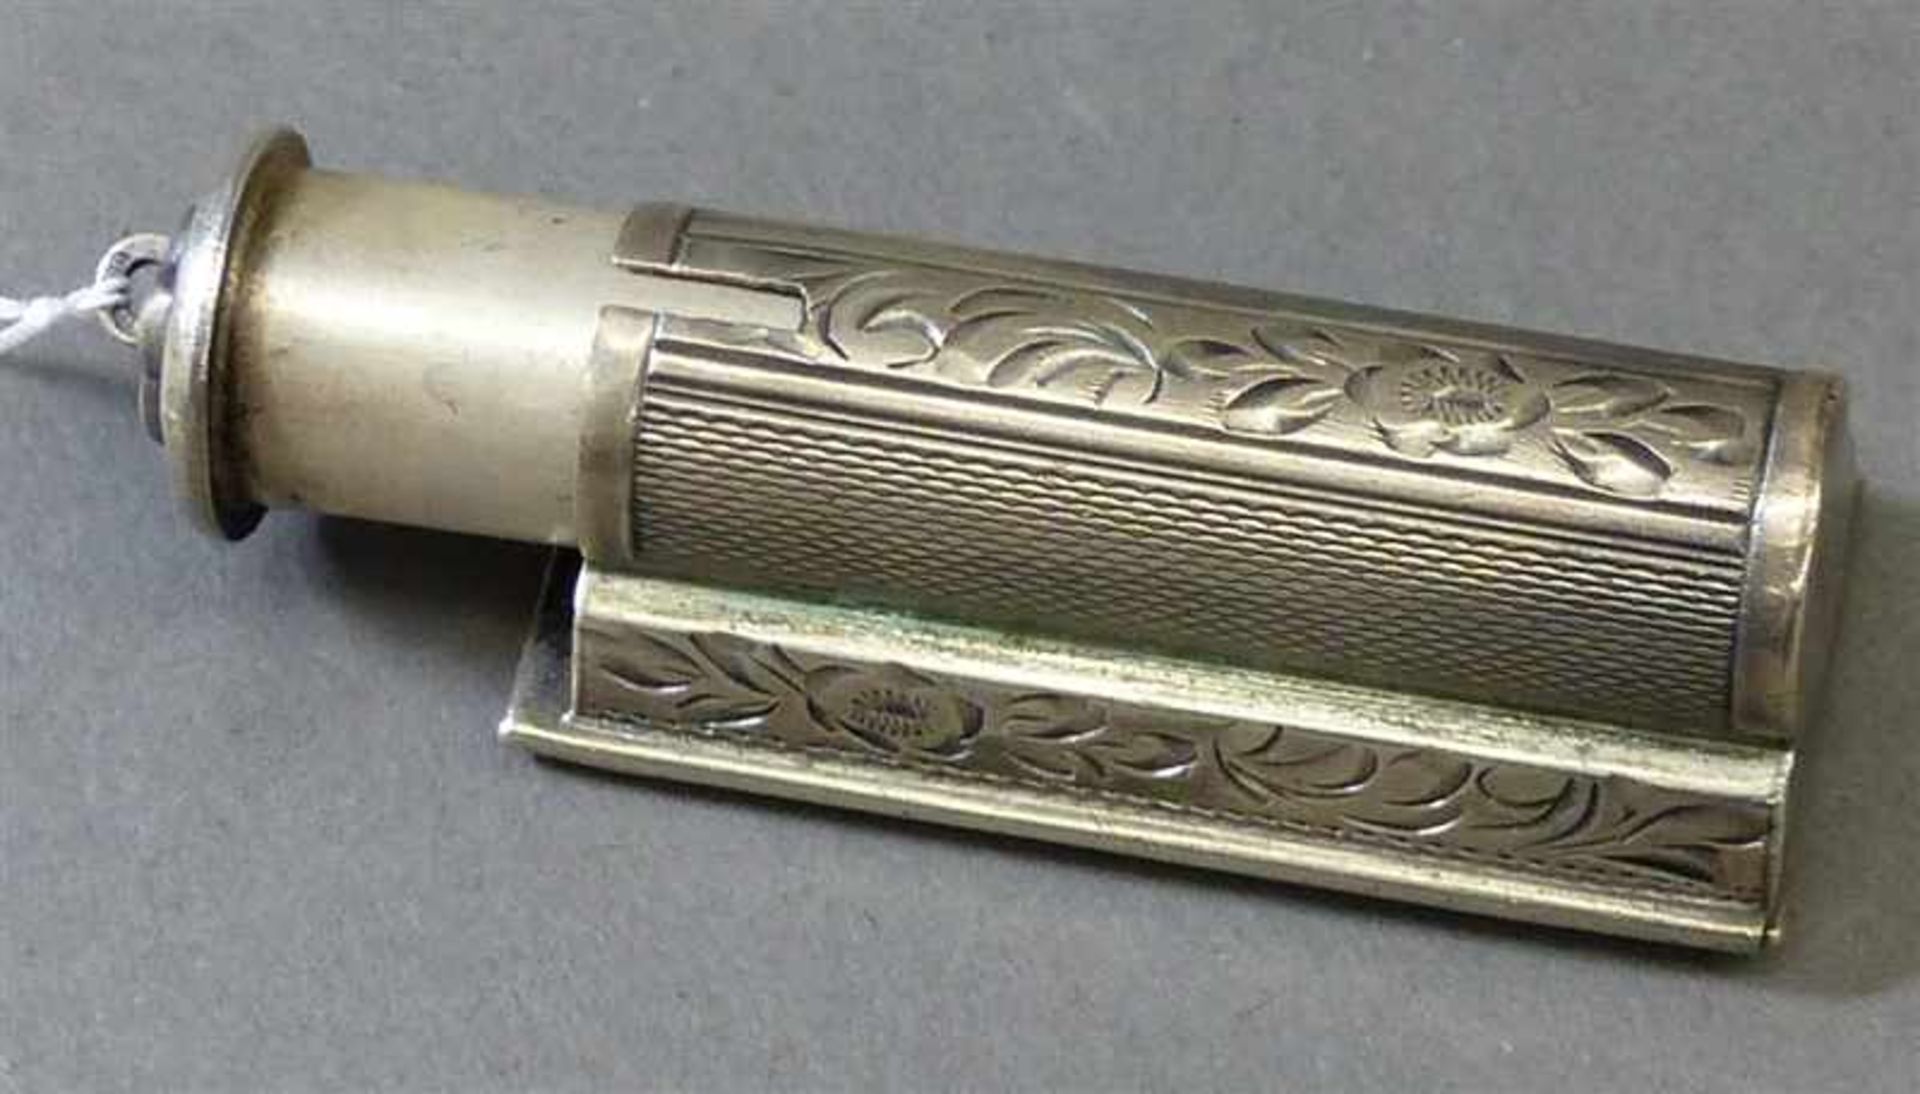 Lippenstifthalterung, um 1900mit Spiegel, 800er Silber, graviert, ca 28g, l 5 cm,